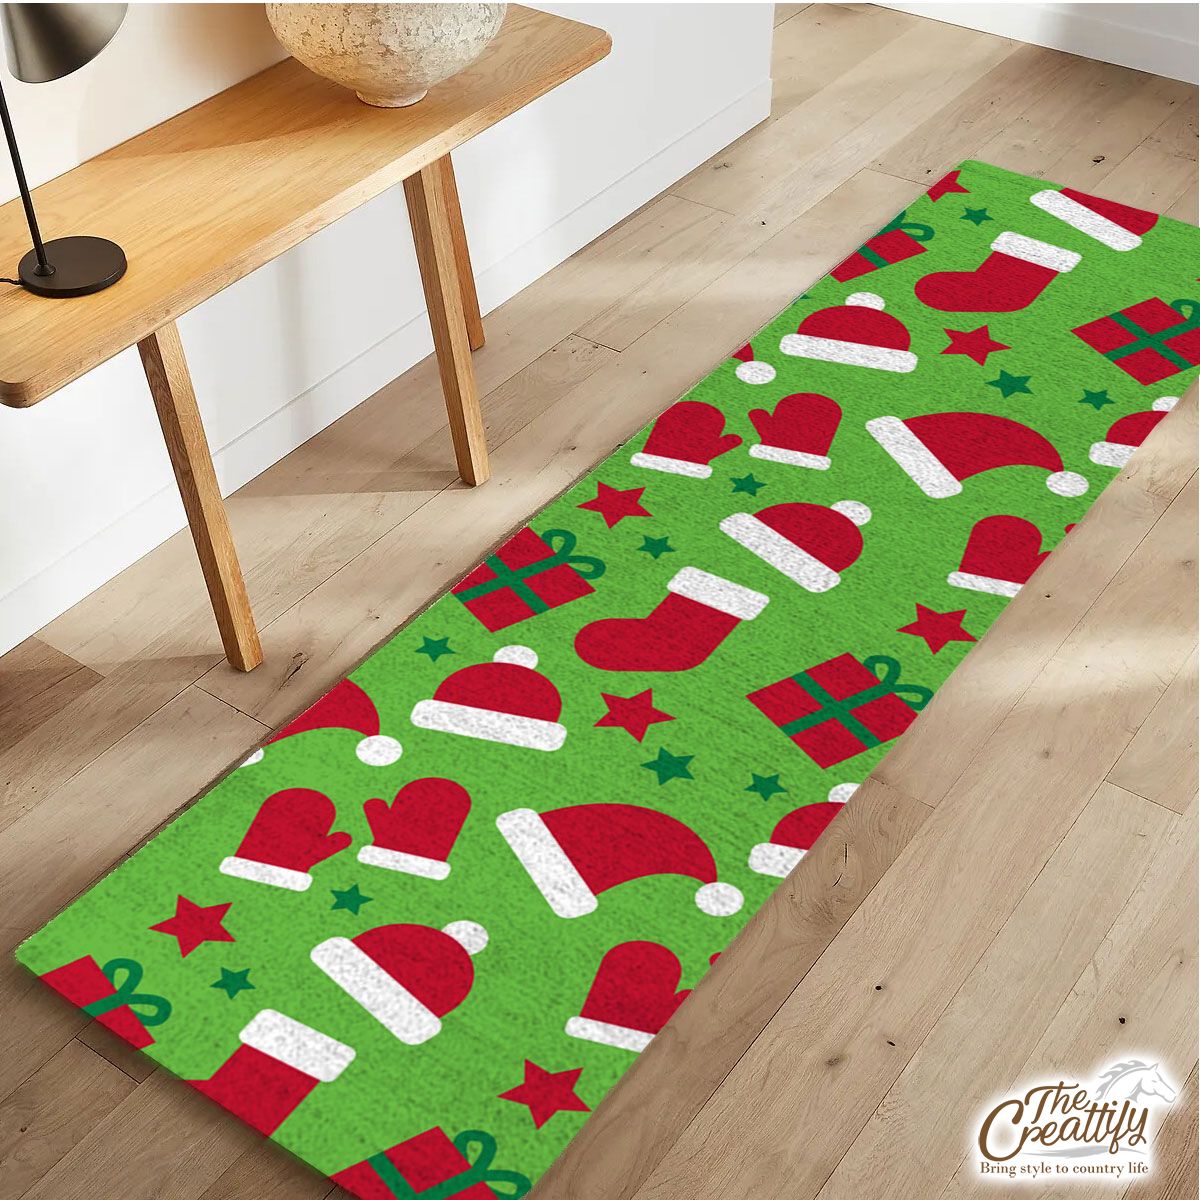 Red Green And White Christmas Gift, Christmas Socks, Santa Hat Runner Carpet